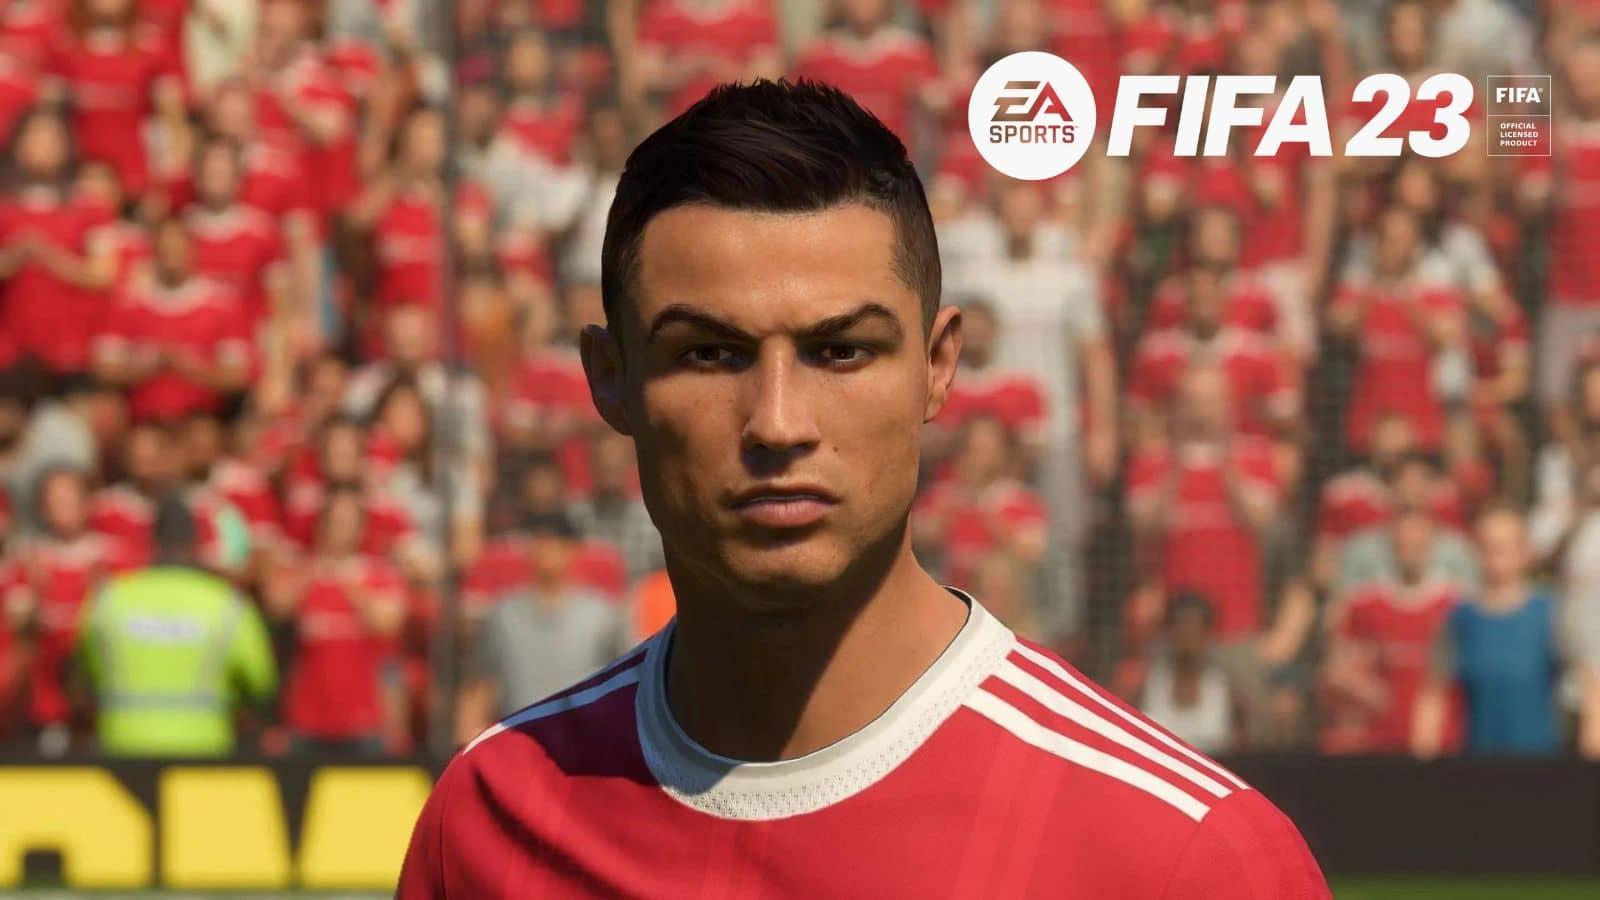 FIFA 23 Ronaldo rating